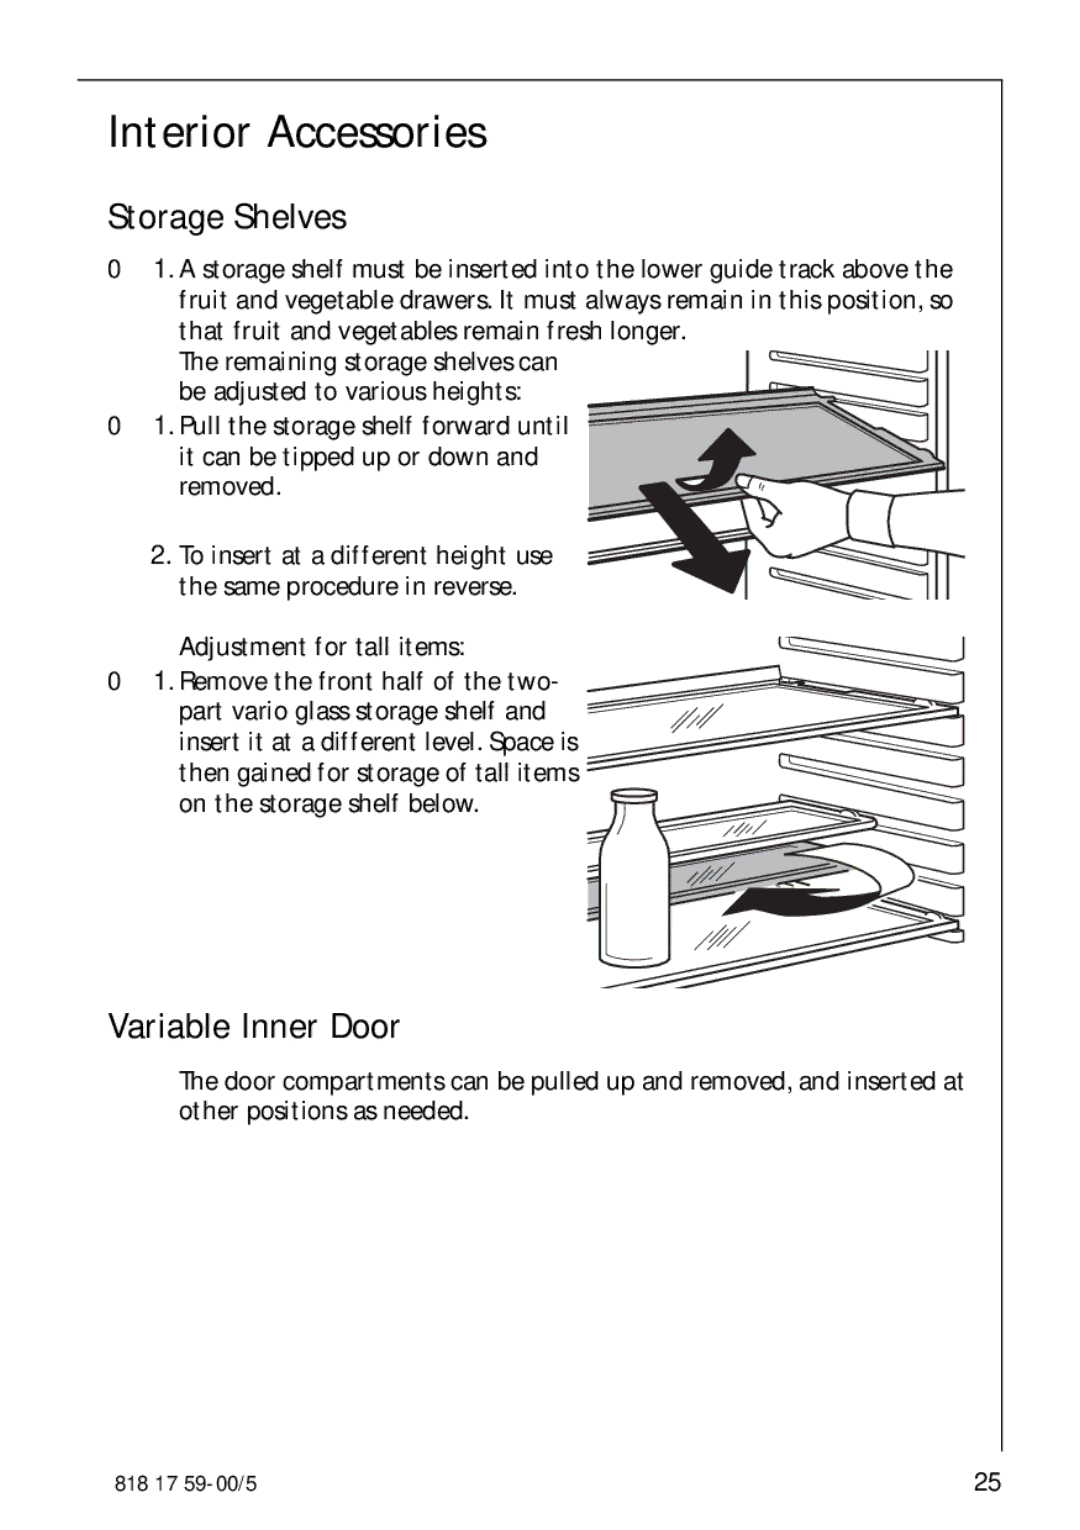 AEG 3150-7 KG manual Interior Accessories, Storage Shelves, Variable Inner Door, On the storage shelf below 